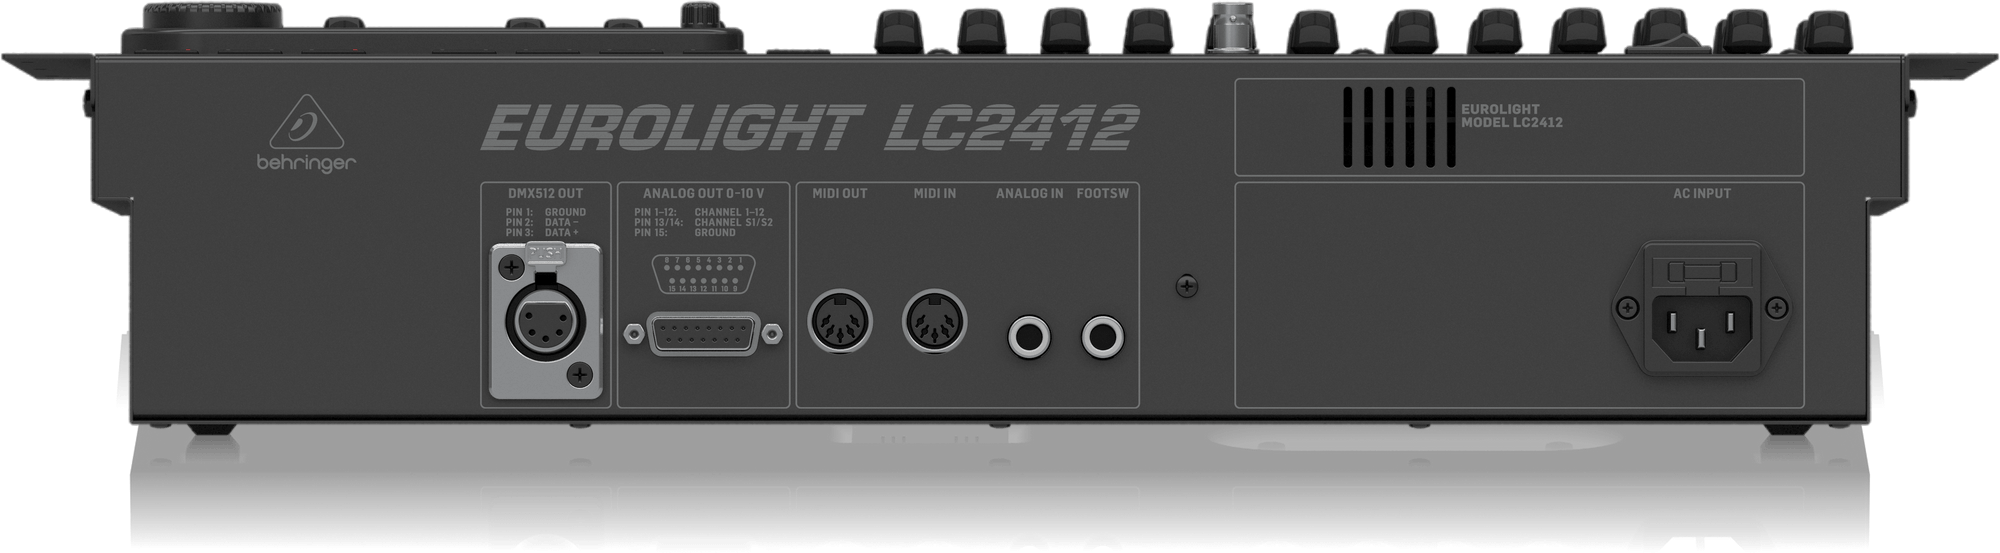 Behringer LC2412 V2 512-Ch 24-Fader DMX Controller